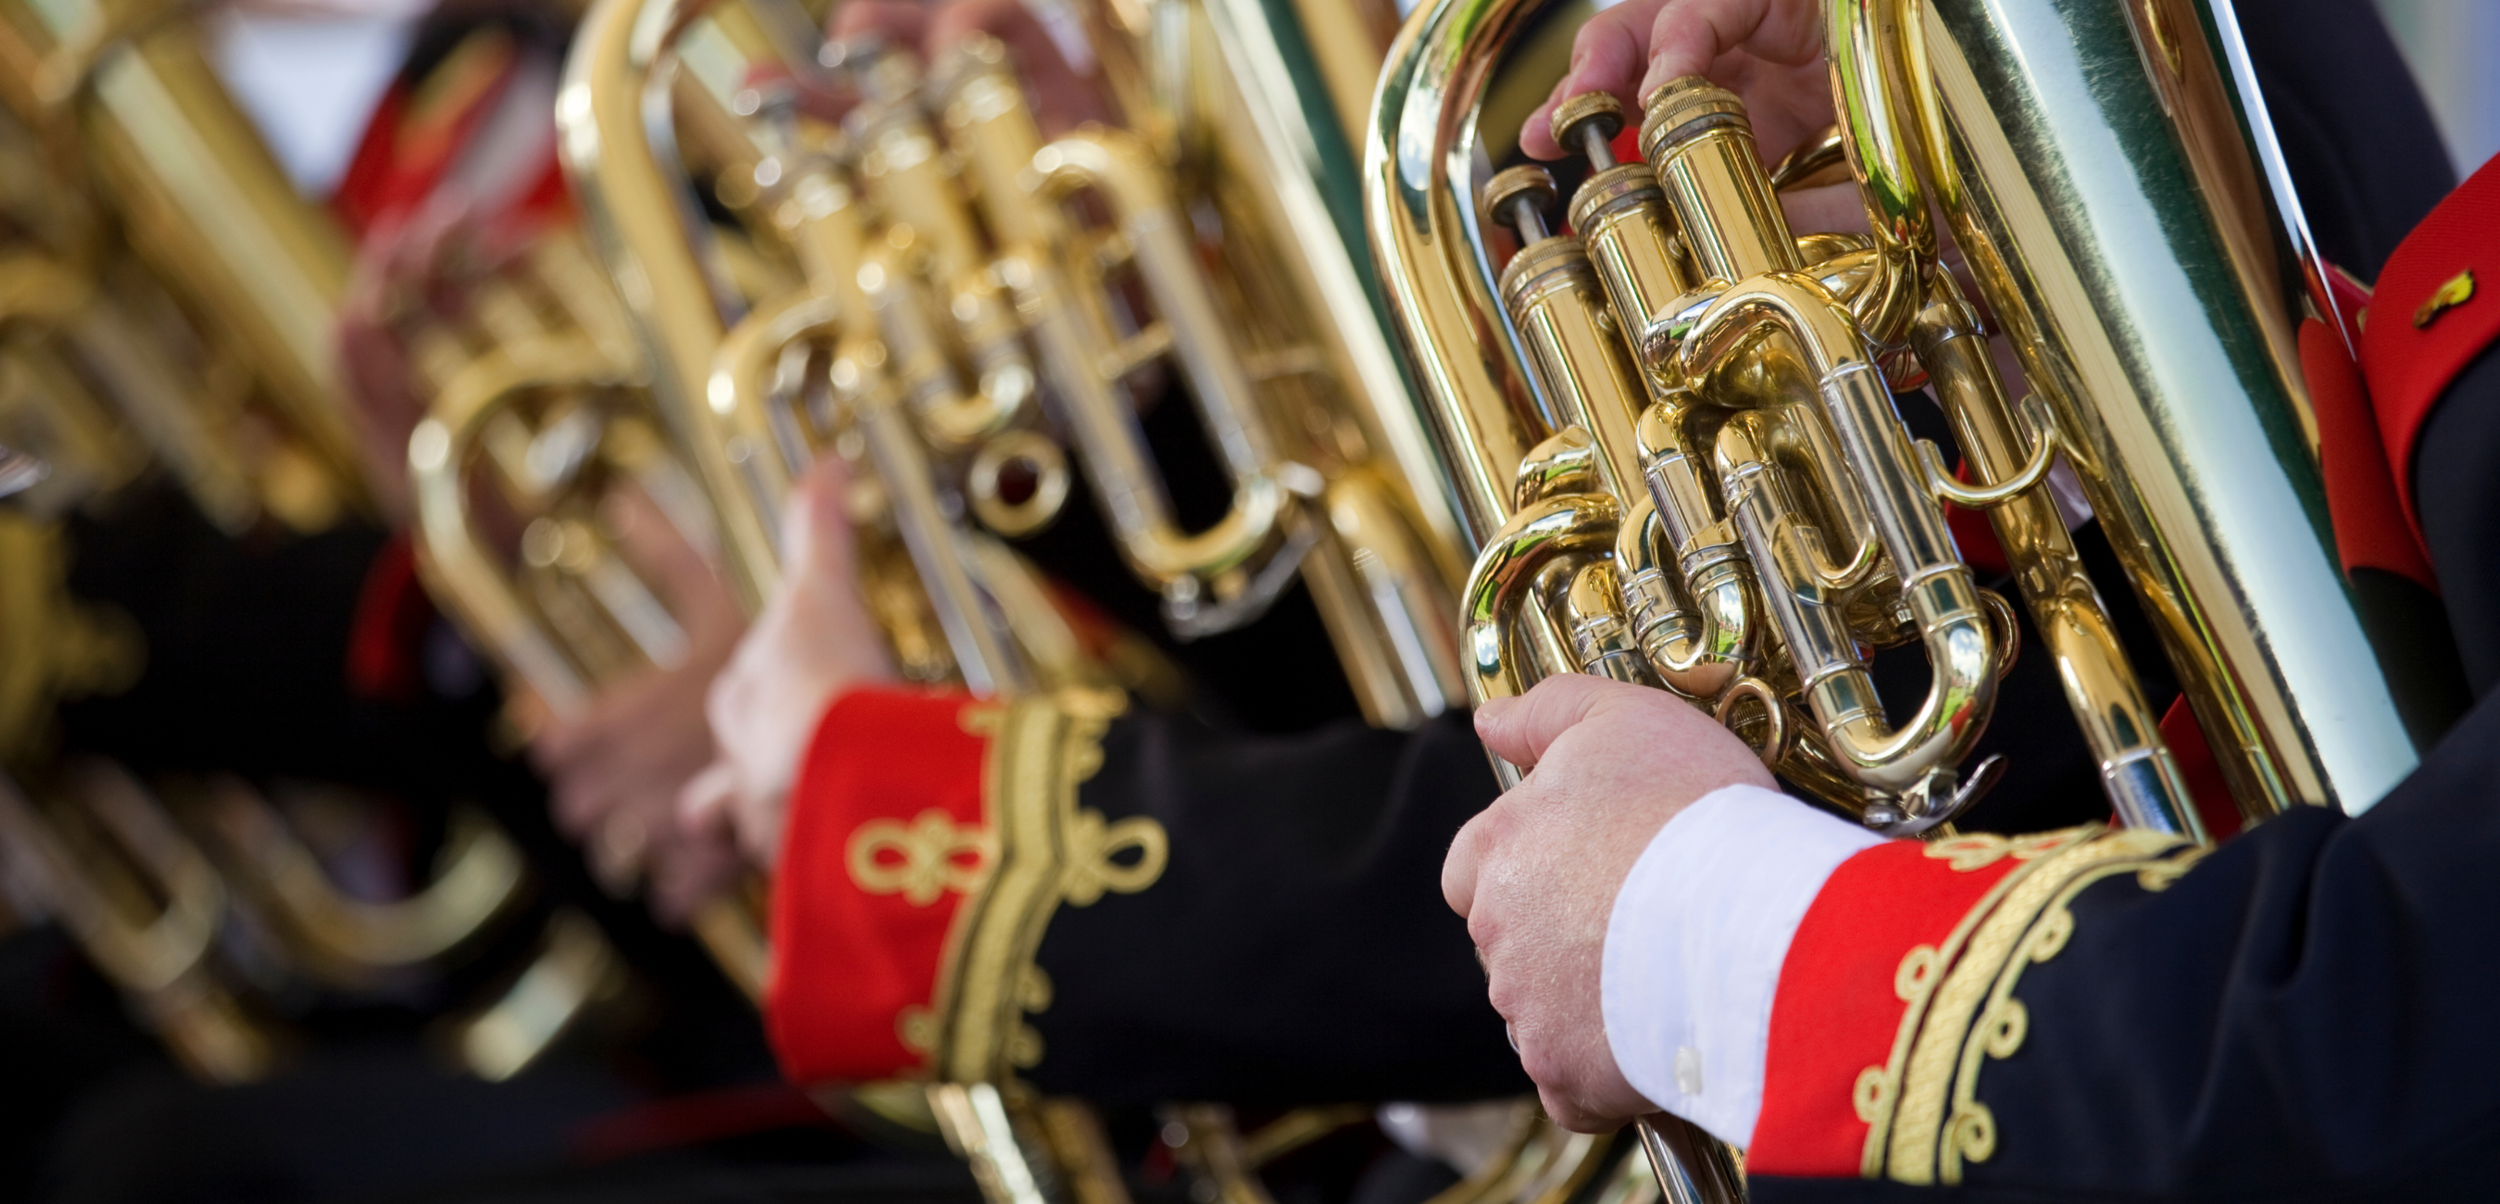 Brass Band — Philip Sparke